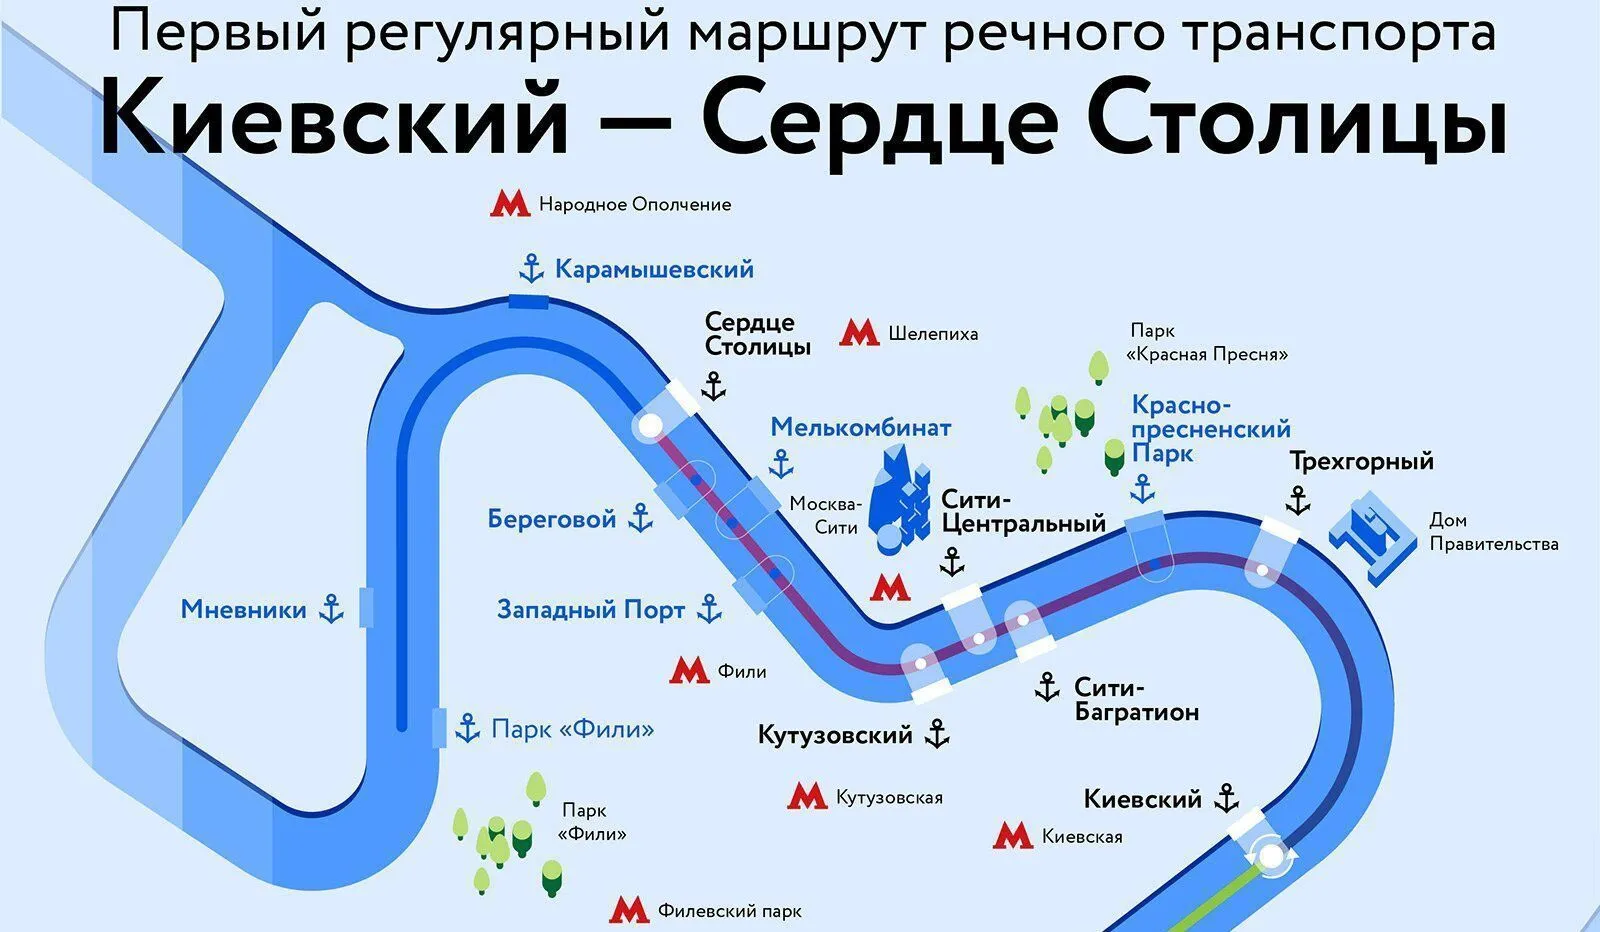 Четыре новых электросудна и пять плавучих причалов появится в акватории Москвы